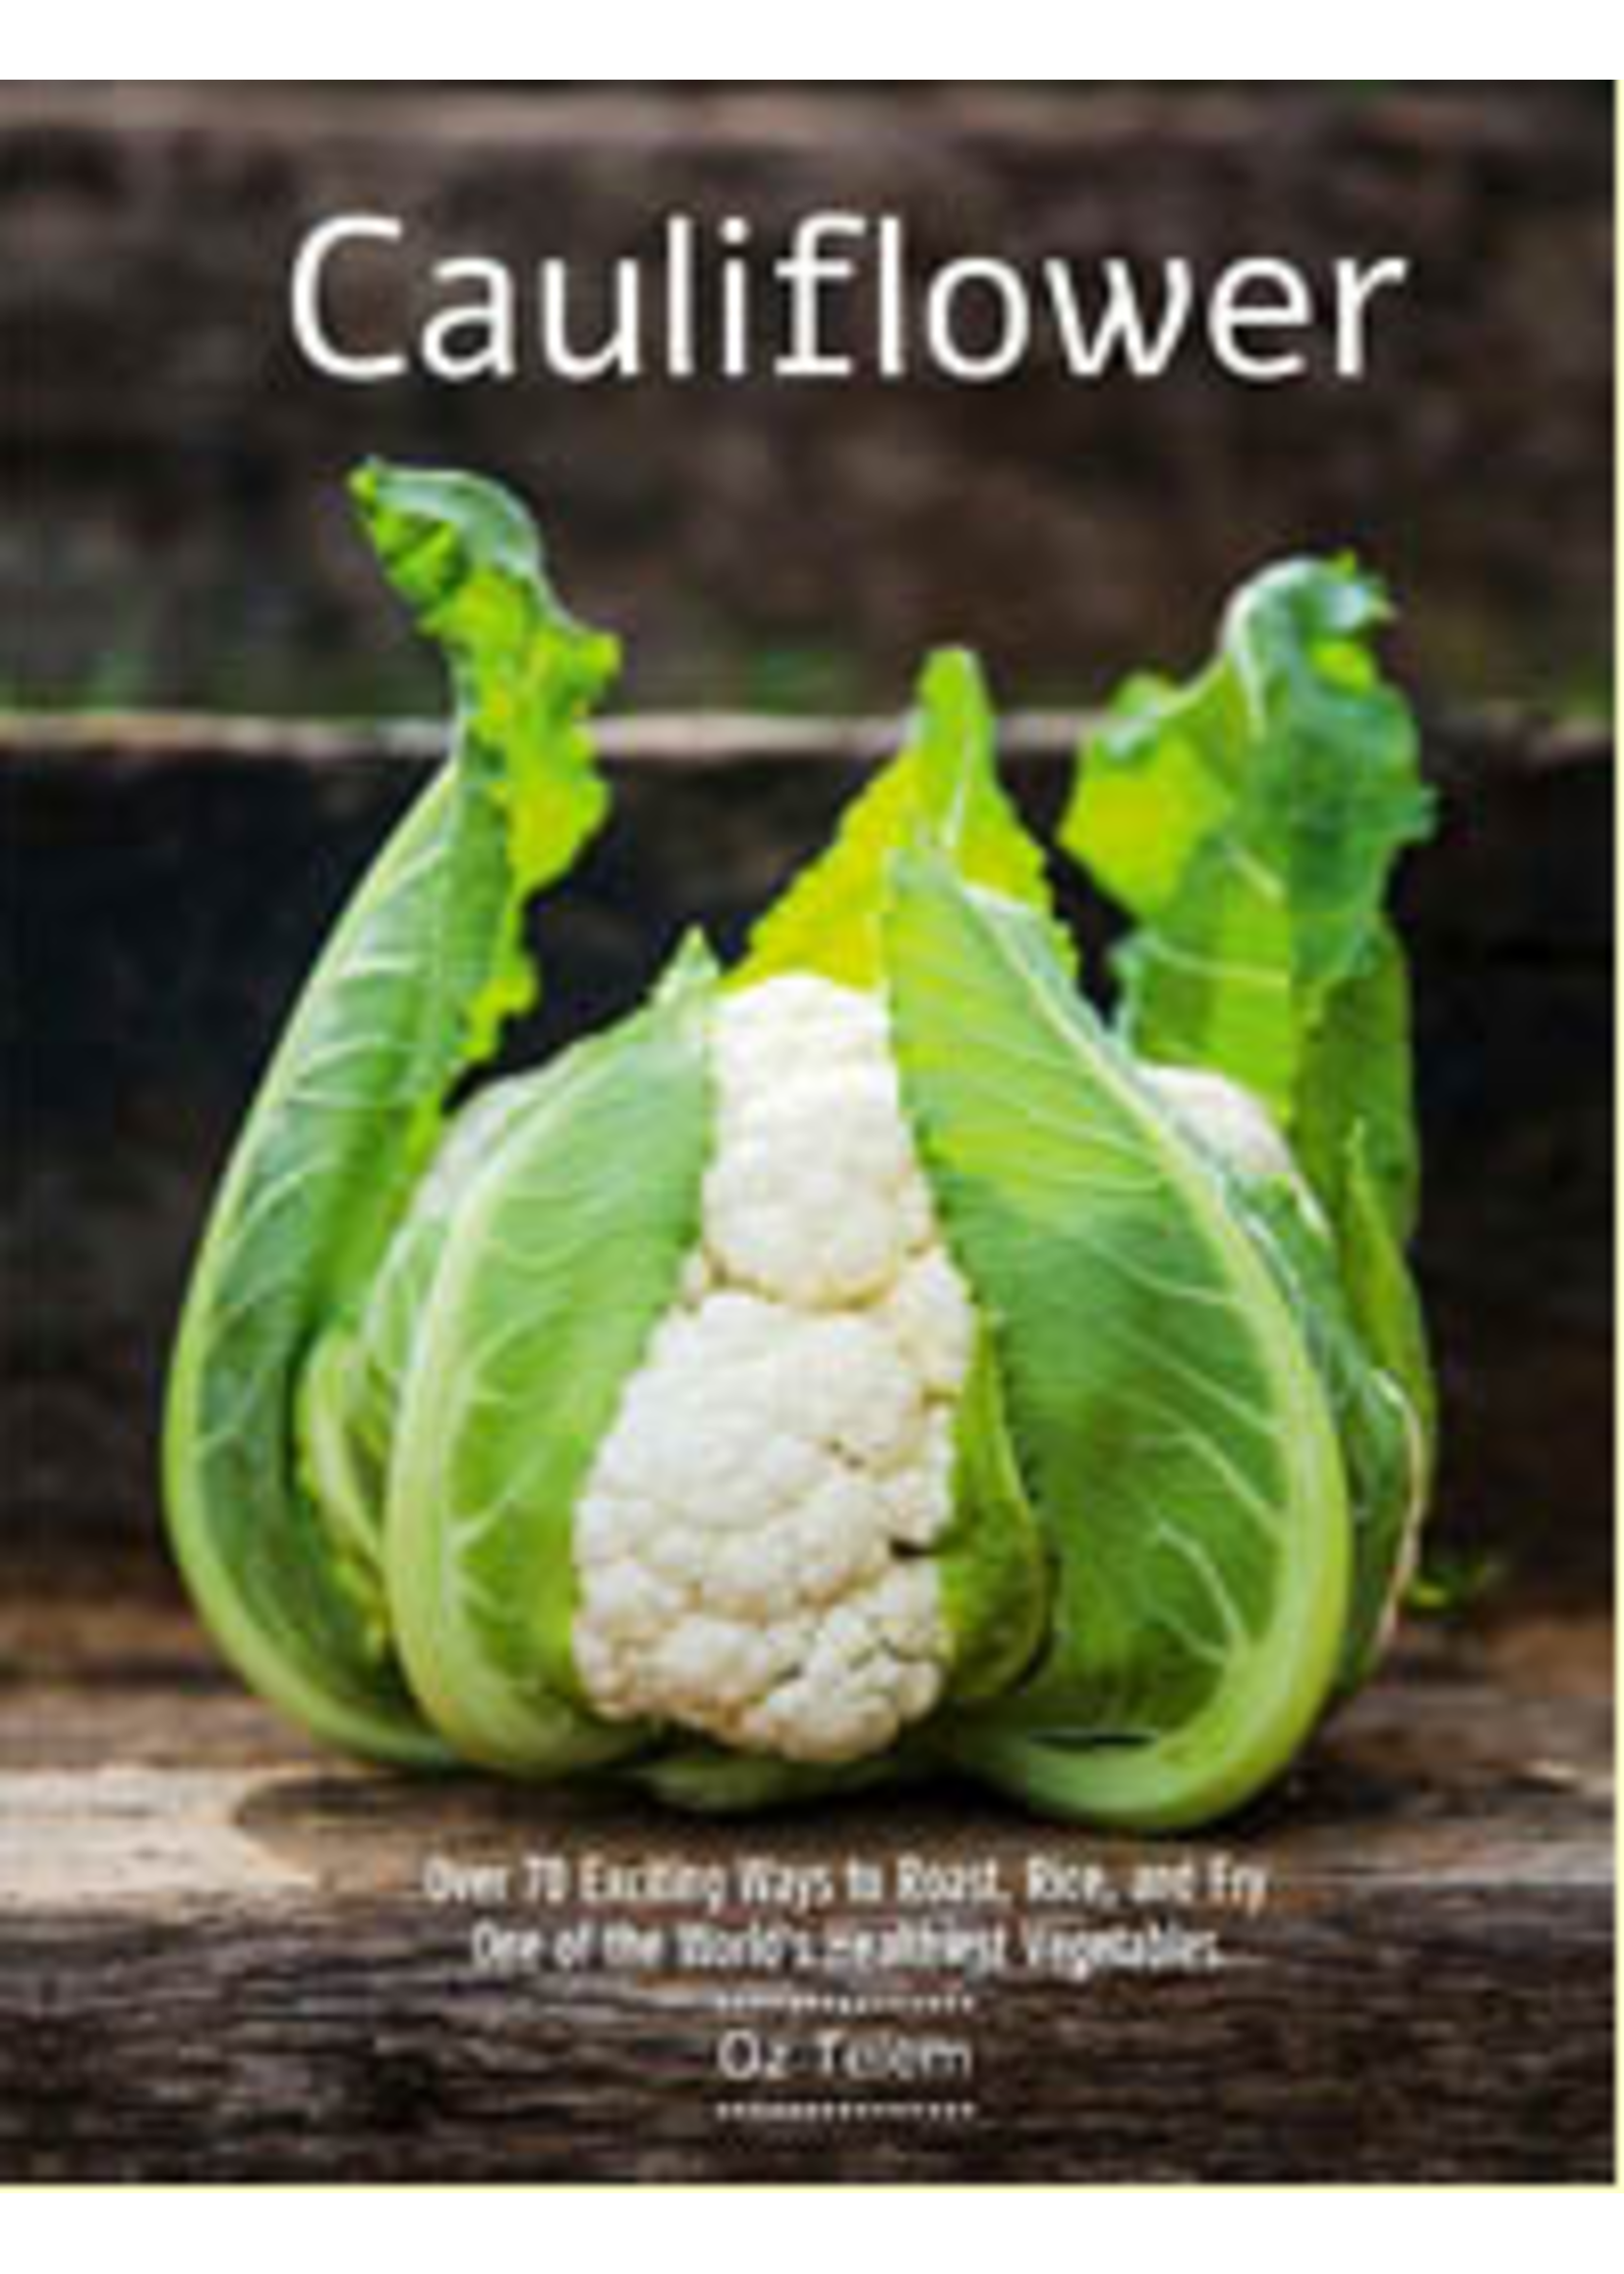 Website Cauliflower